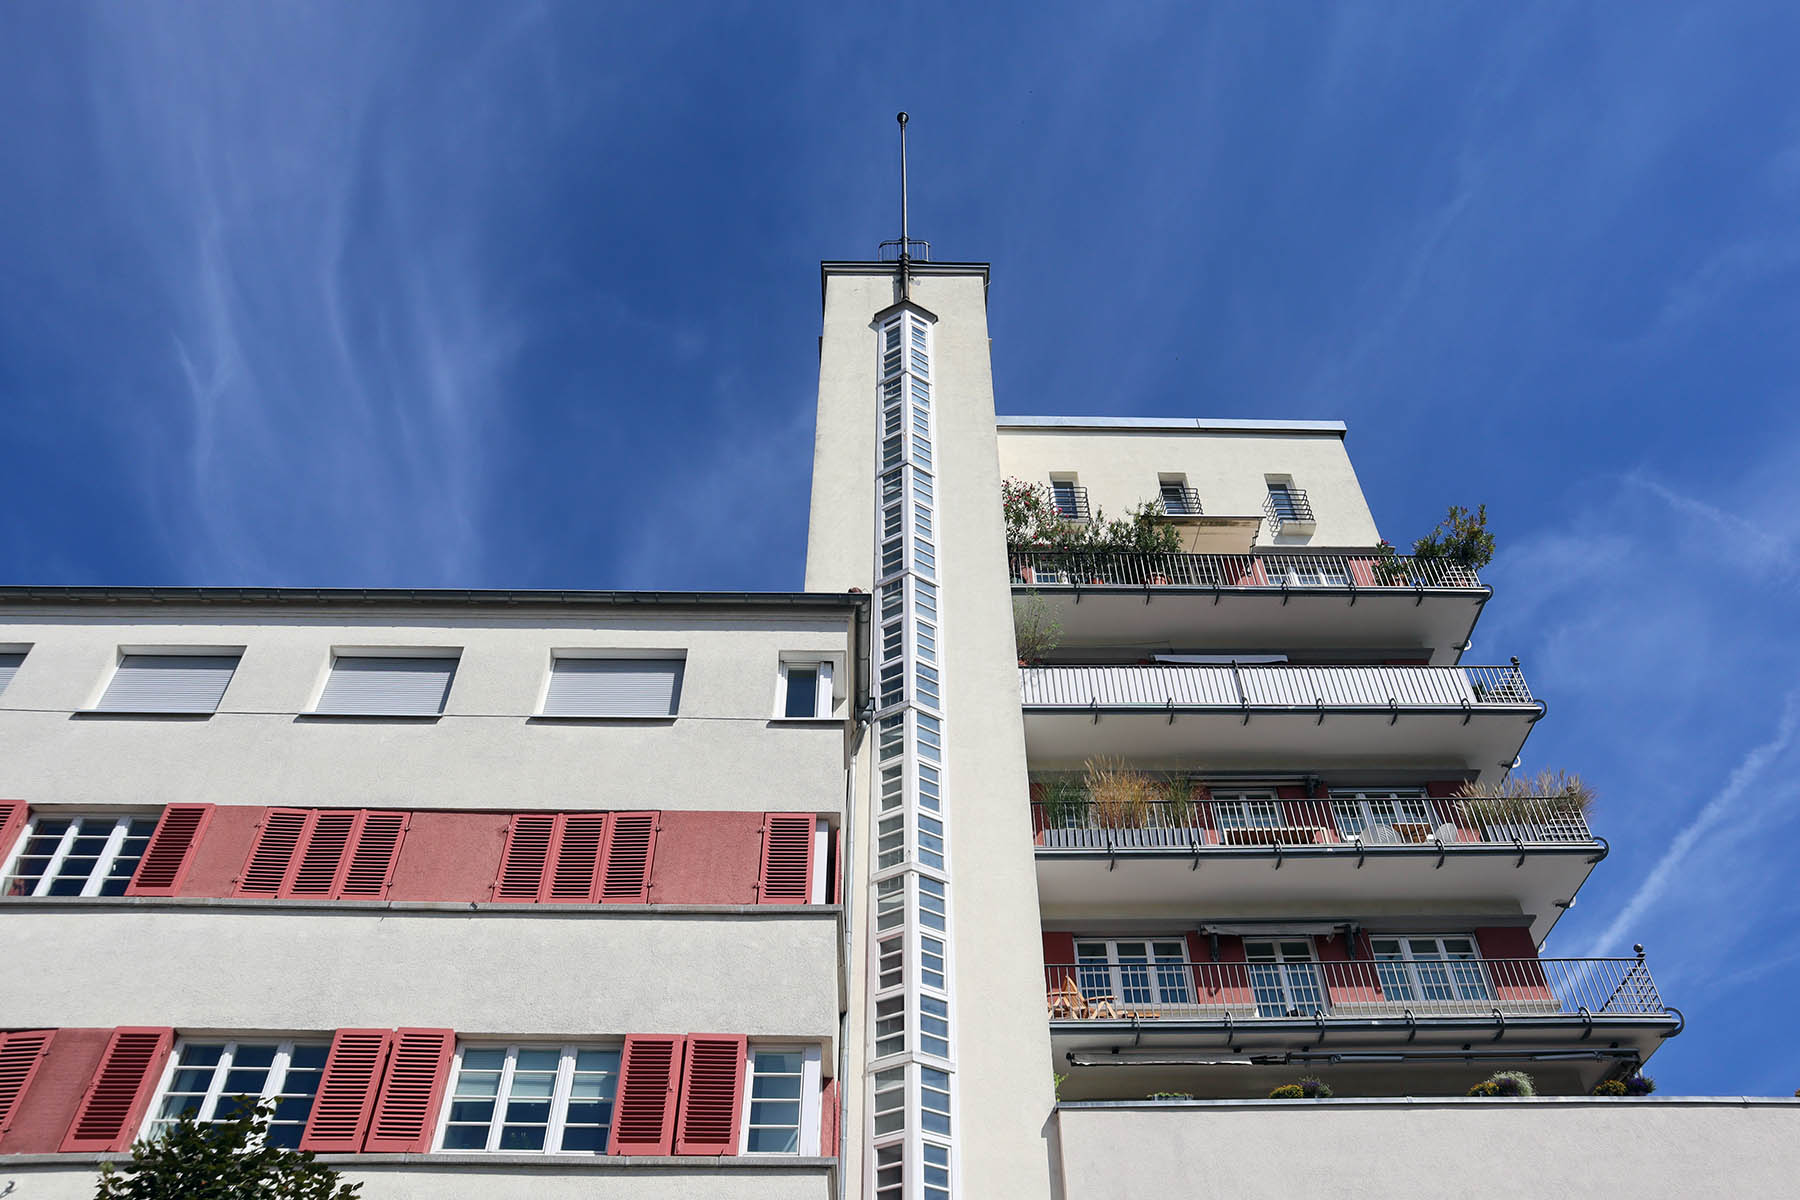 Der Architekt war Karl Beer, der mit dem Wohnhof das erste Wohnhochhaus von Stuttgart schuf. Fertigstellung 1927, Wiederaufbau nach Weltkriegsschäden 1952.